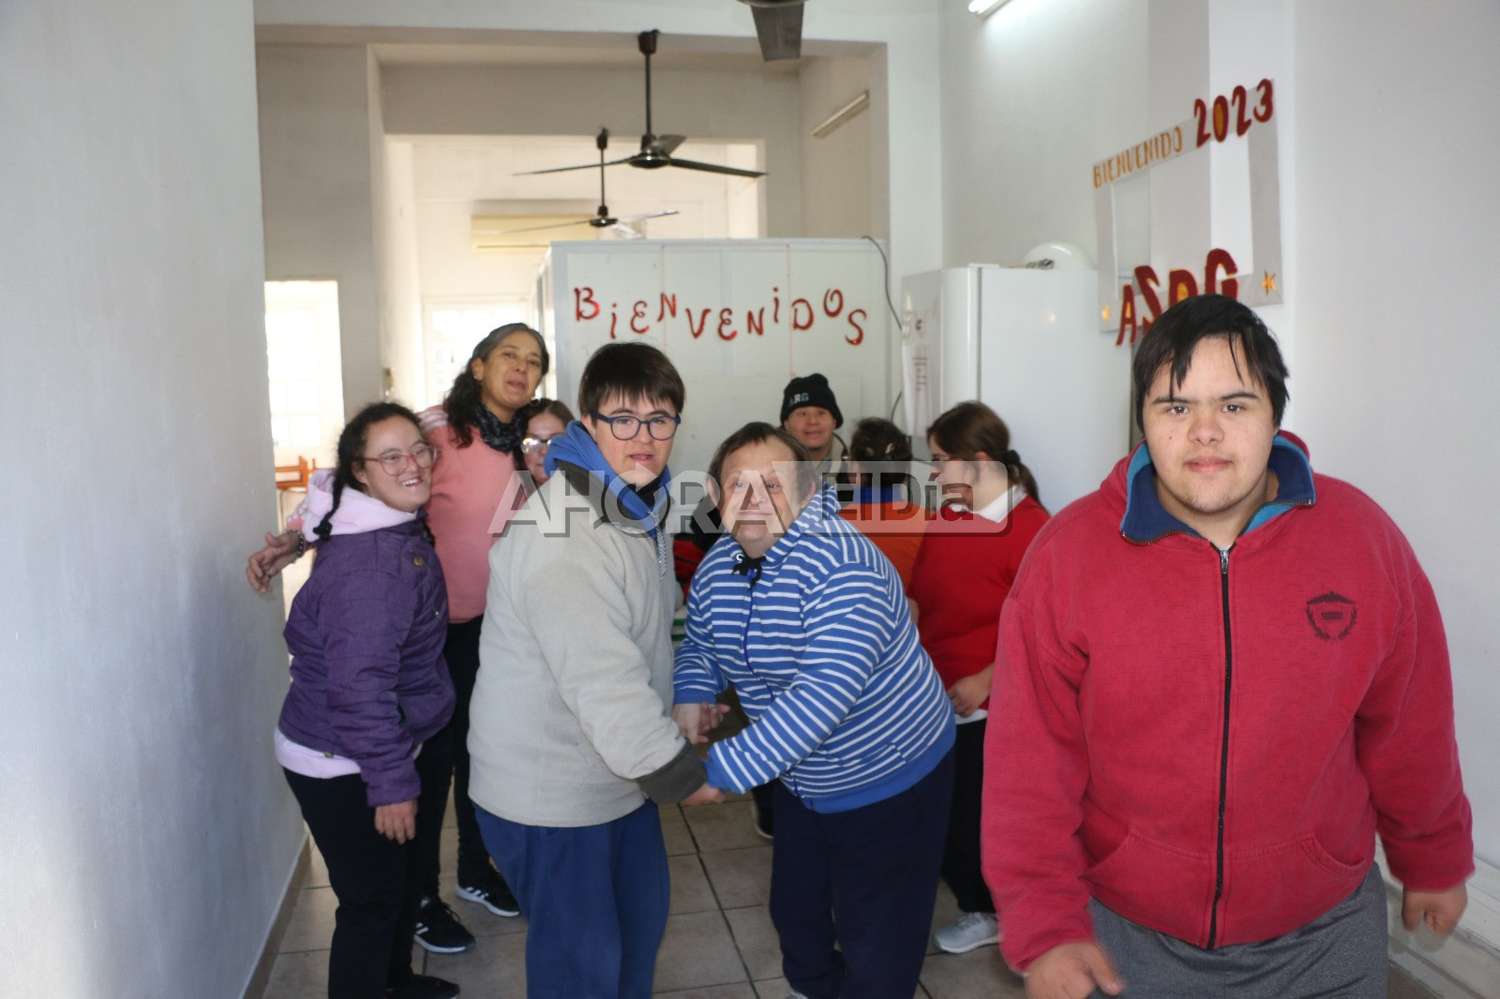 Los niños con Síndrome de Down, desamparados en Gualeguaychú: deudas, obras sociales insensibles y presuntas amenazas